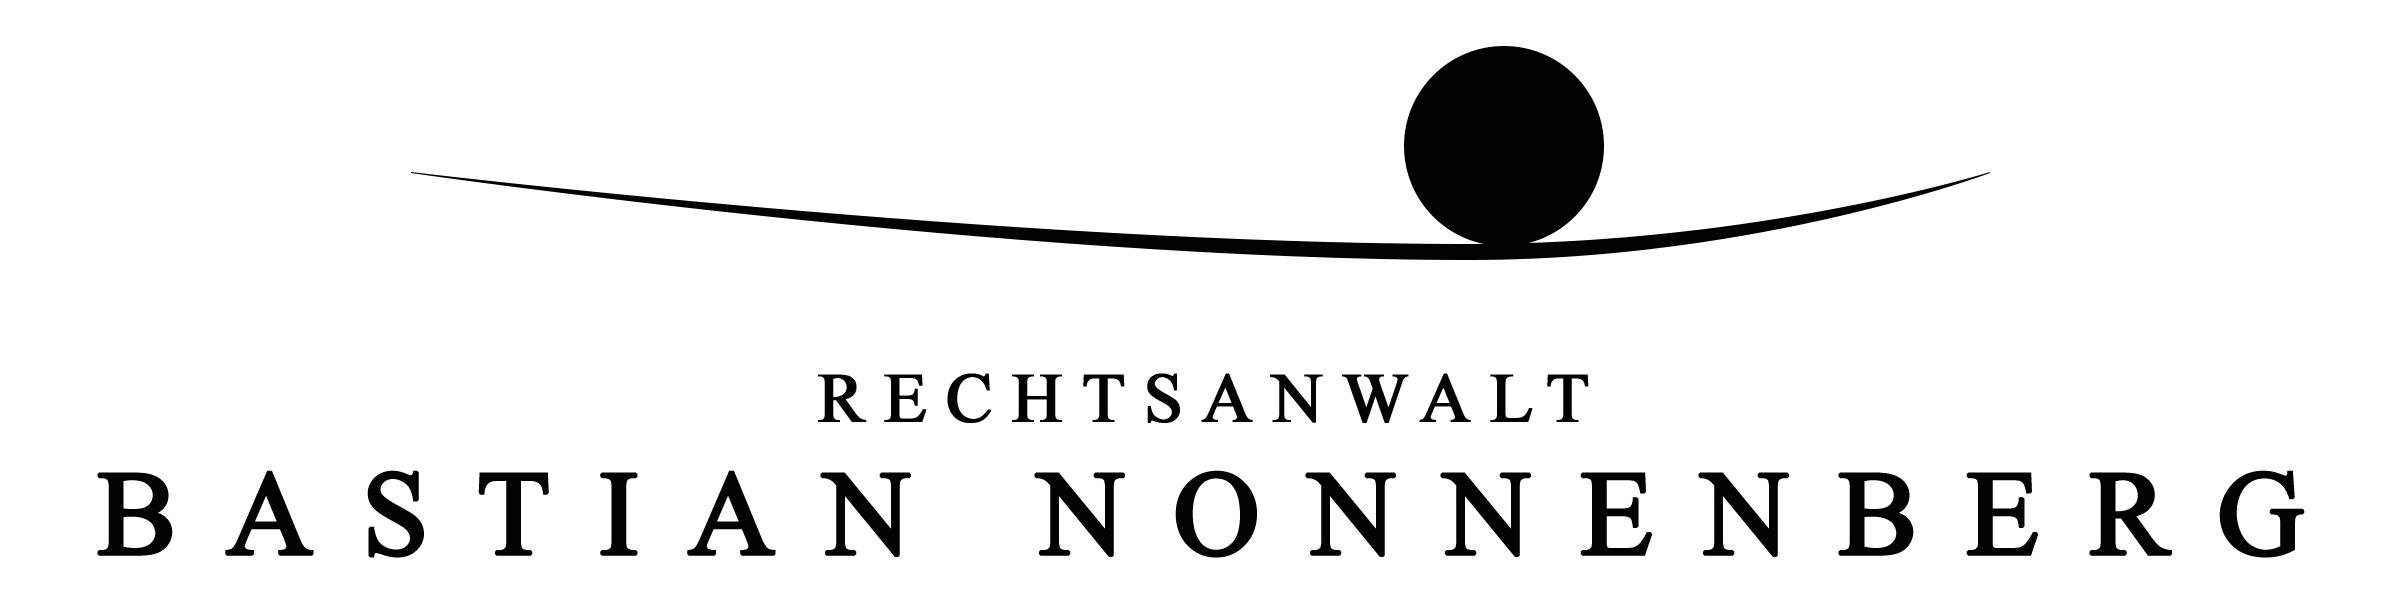 Kanzlei Nonnenberg – Rechtsanwalt in und um Minden Logo